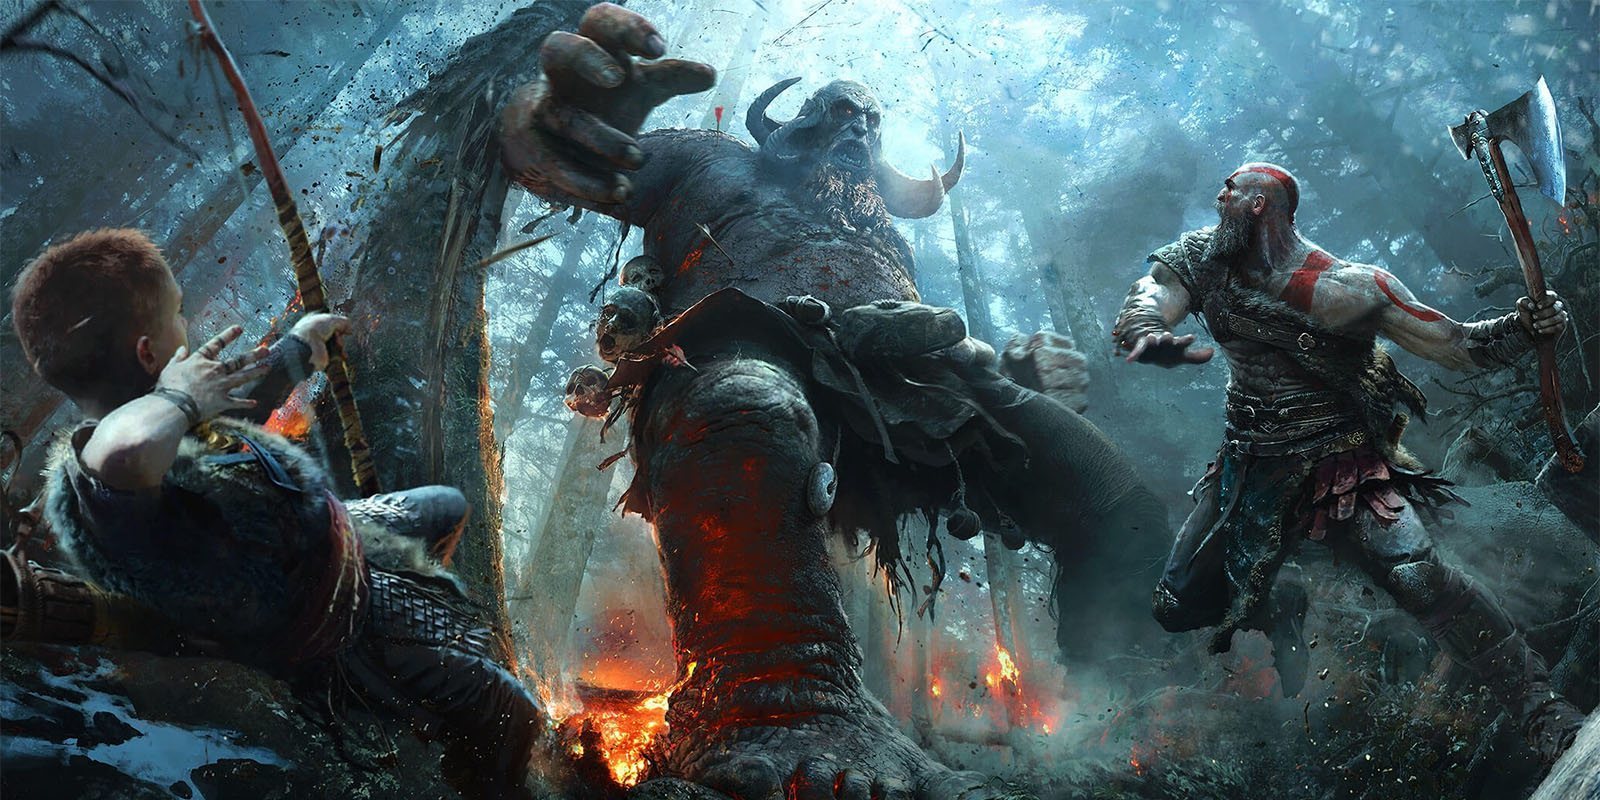 El director de 'God of War' explica como crear juegos más interesantes e inmersivos